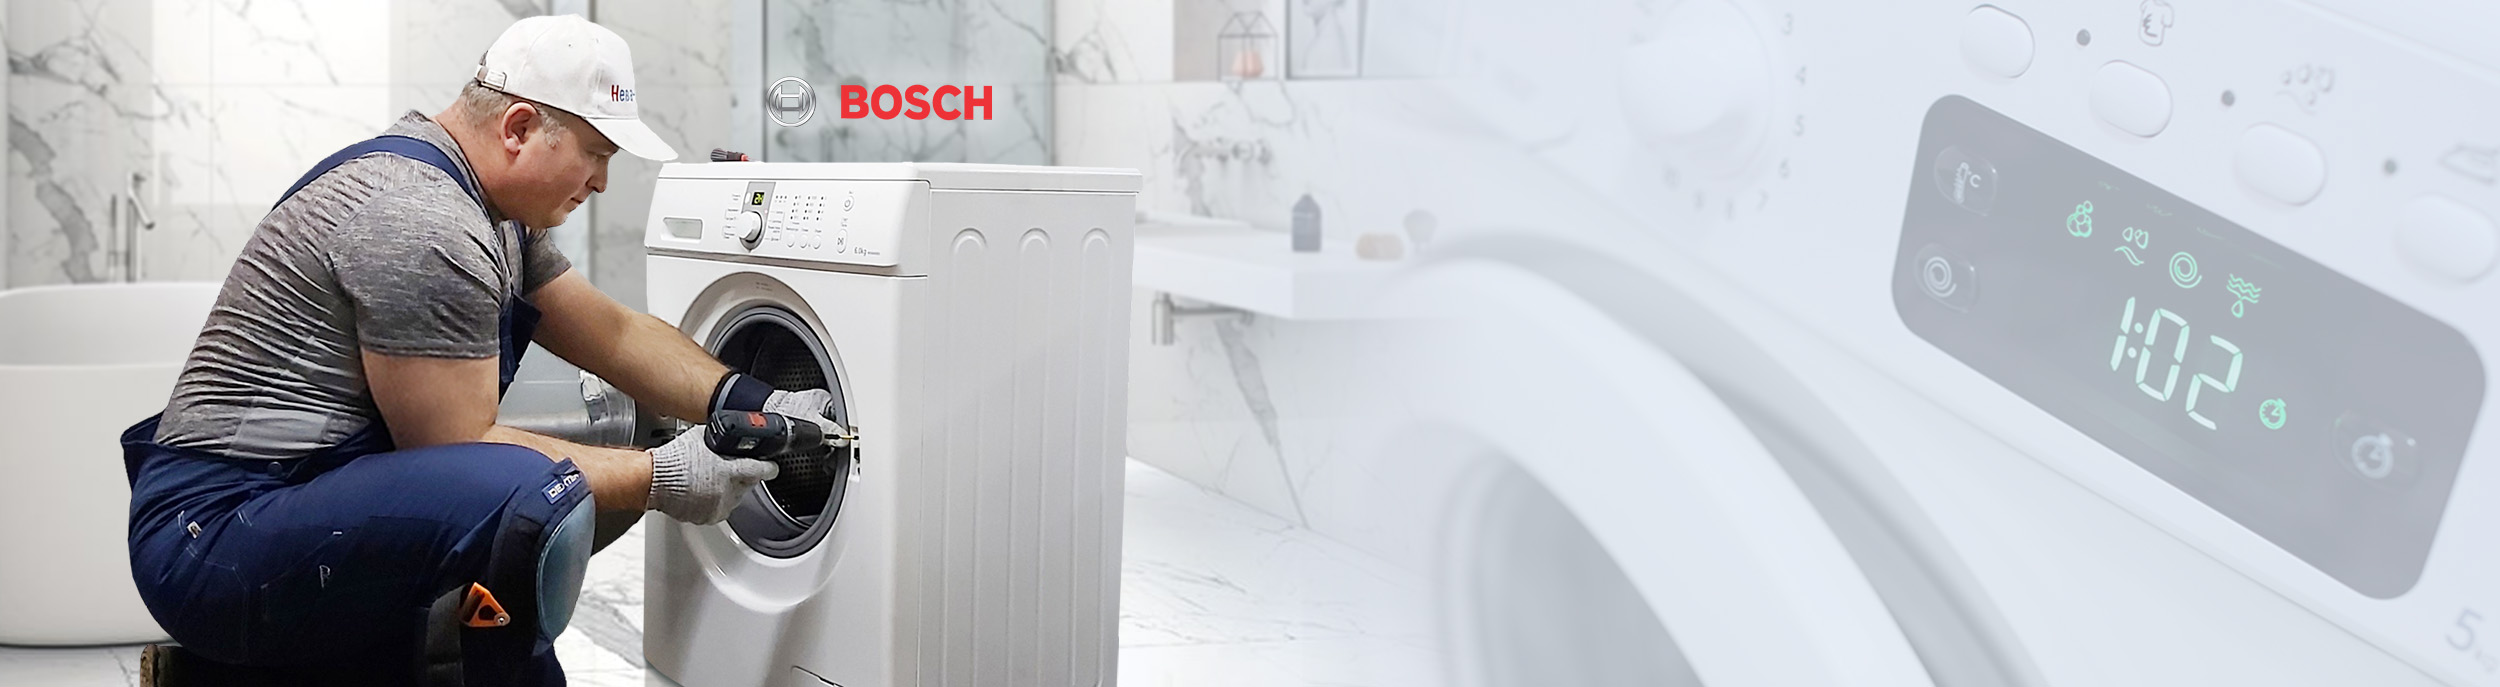 Ремонт посудомоечных машин Bosch в Москве, цена на ремонт ПММ БОШ